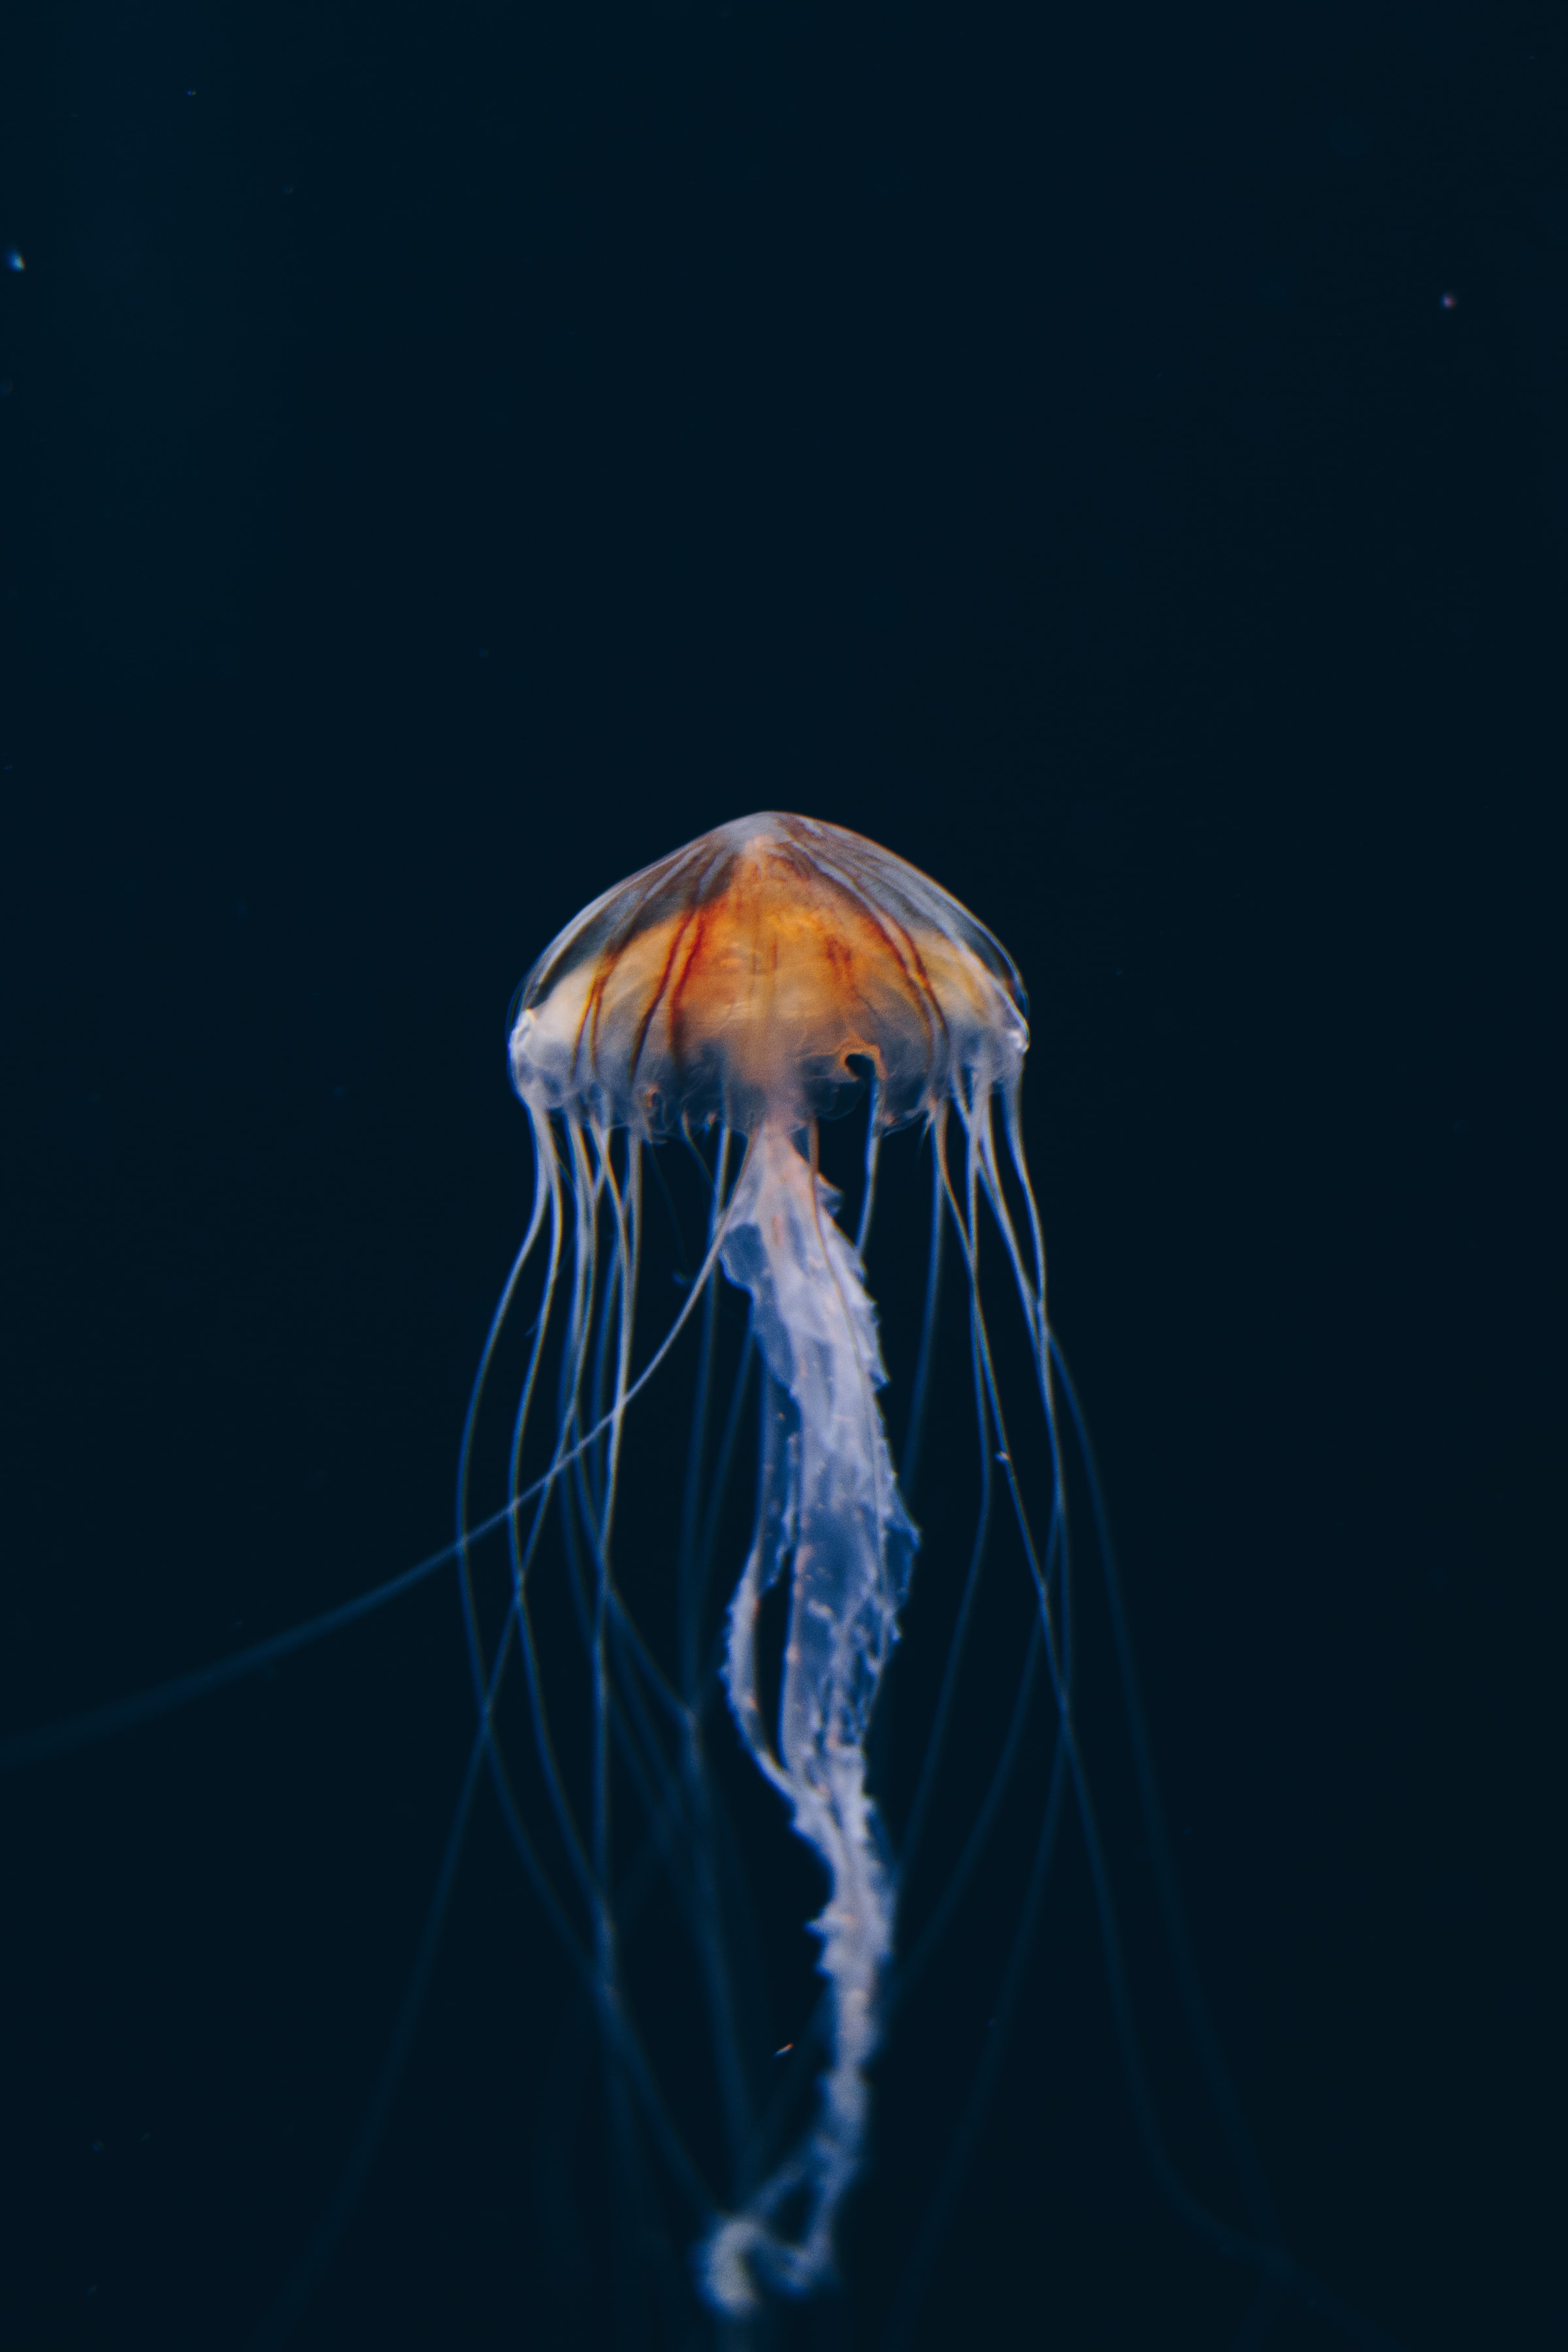 jellyfish, nature, water, dark, beautiful, underwater world cellphone